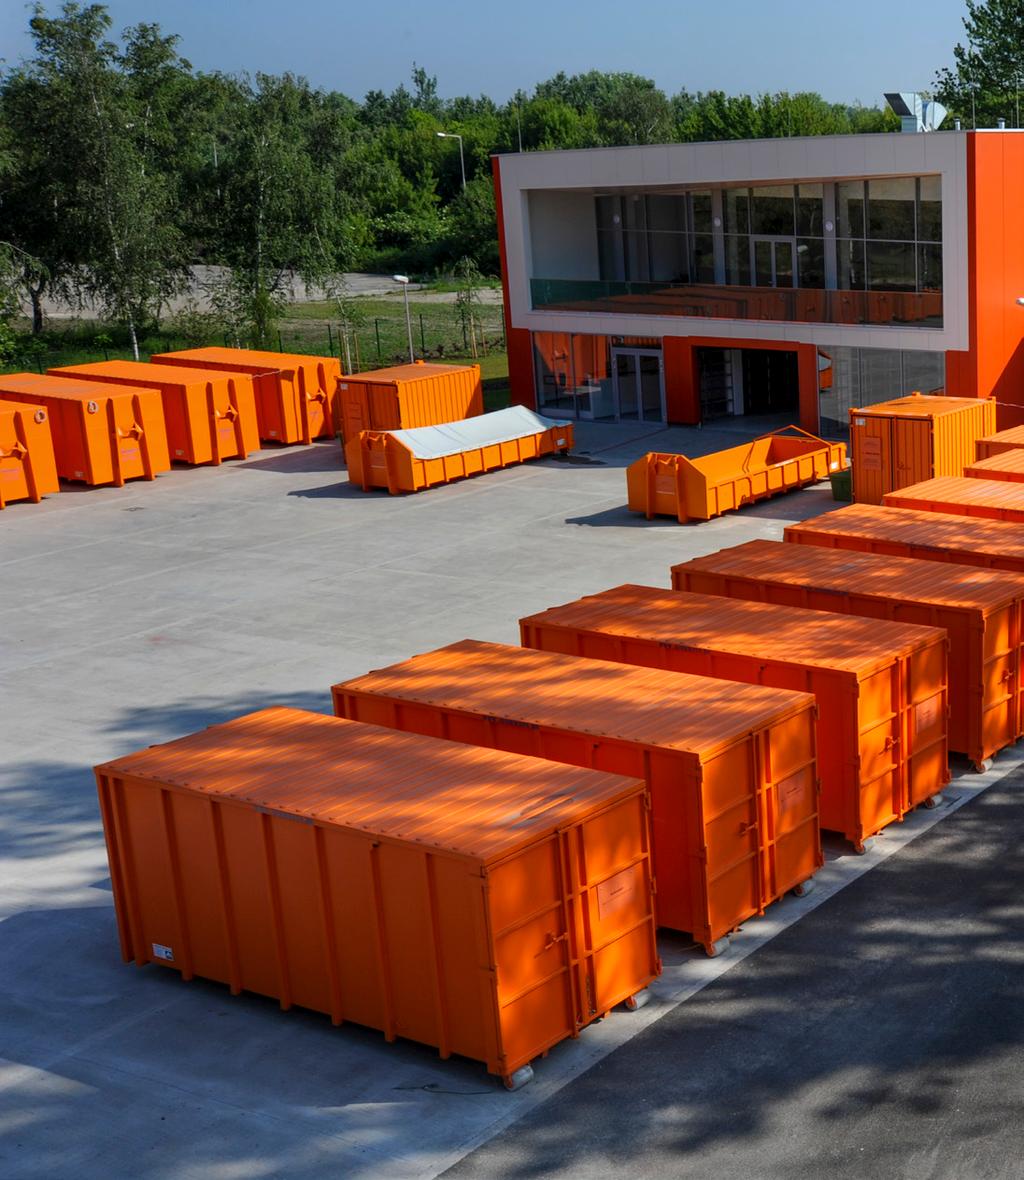 Szemléletformáló és Újrahasználati Központok (SZÚK) Budapest Főváros Önkormányzata a térség hulladékgazdálkodási rendszerének fejlesztéséhez a KEOP 1.